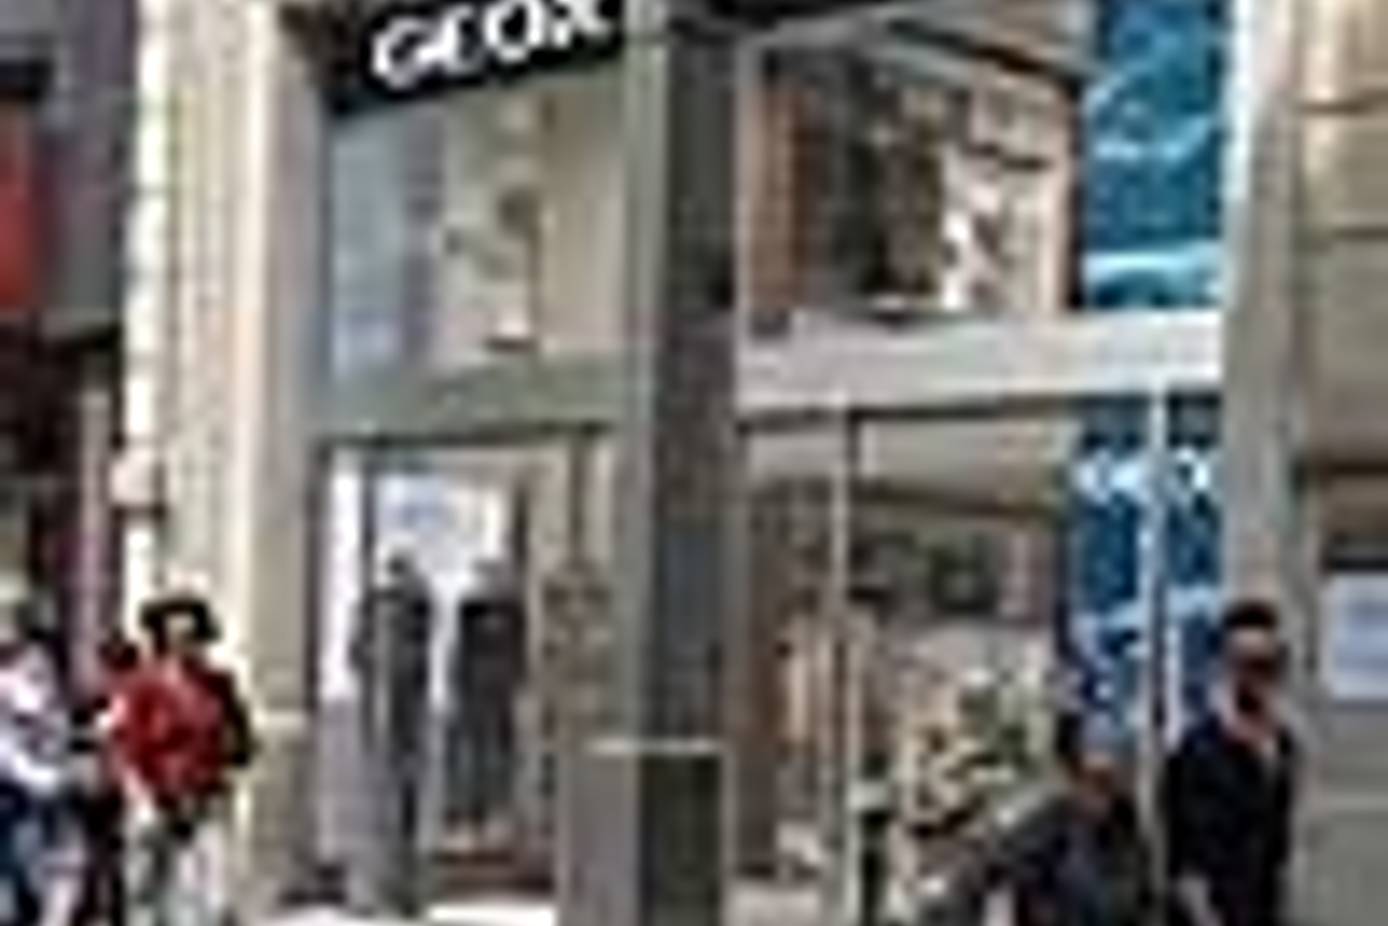 Escuela primaria apoyo Toro Geox abre flagship store en Barcelona